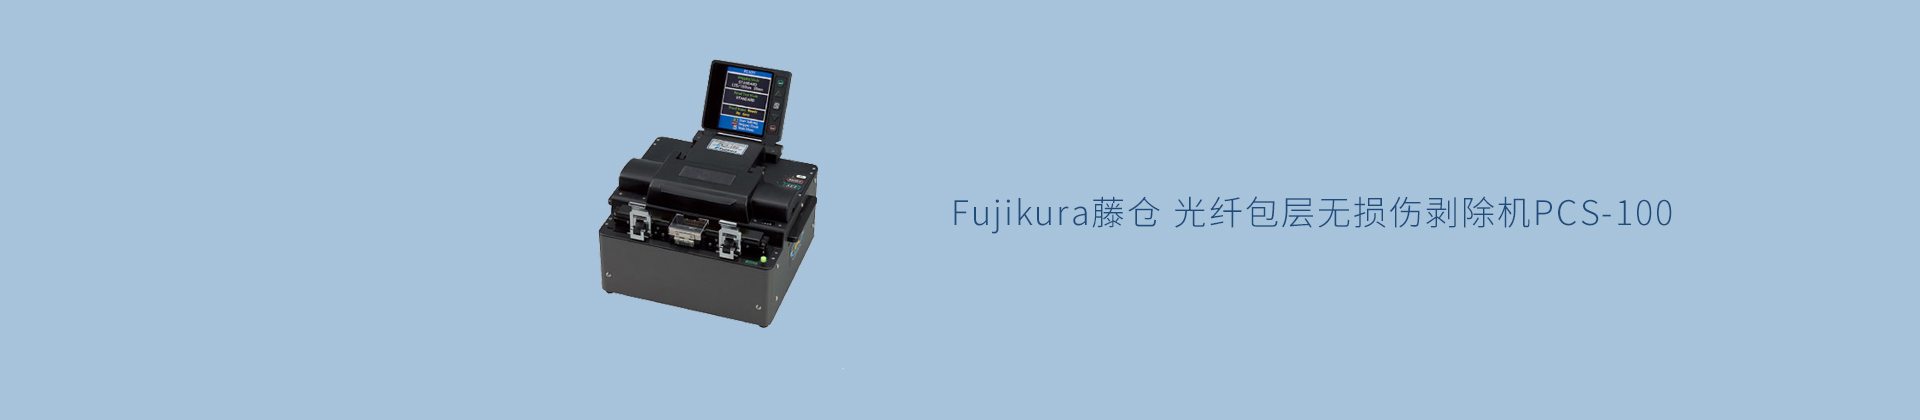 Fujikura藤仓 光纤包层无损伤剥除机PCS-100